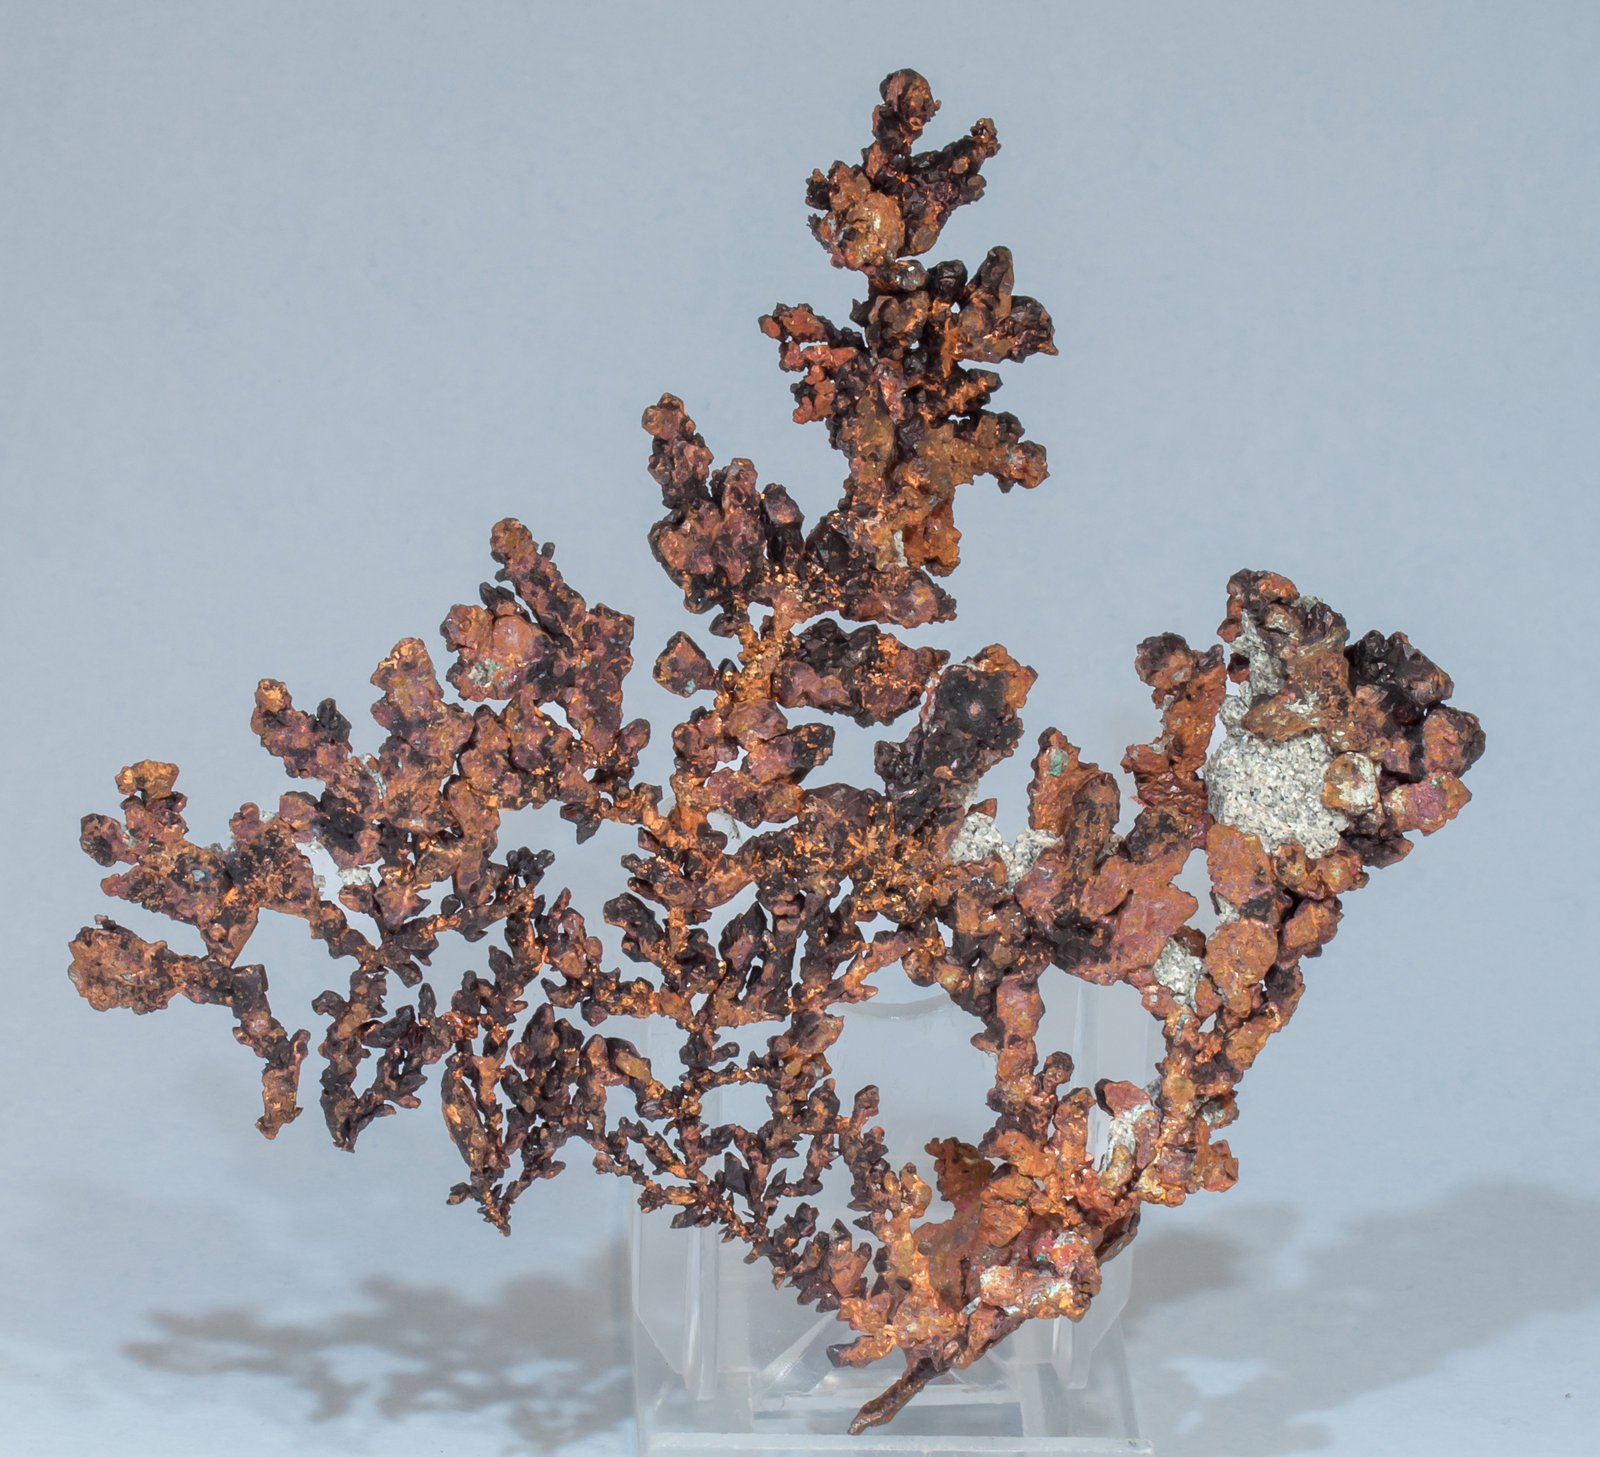 specimens/s_imagesAF8/Copper-TG56AF8r.jpg